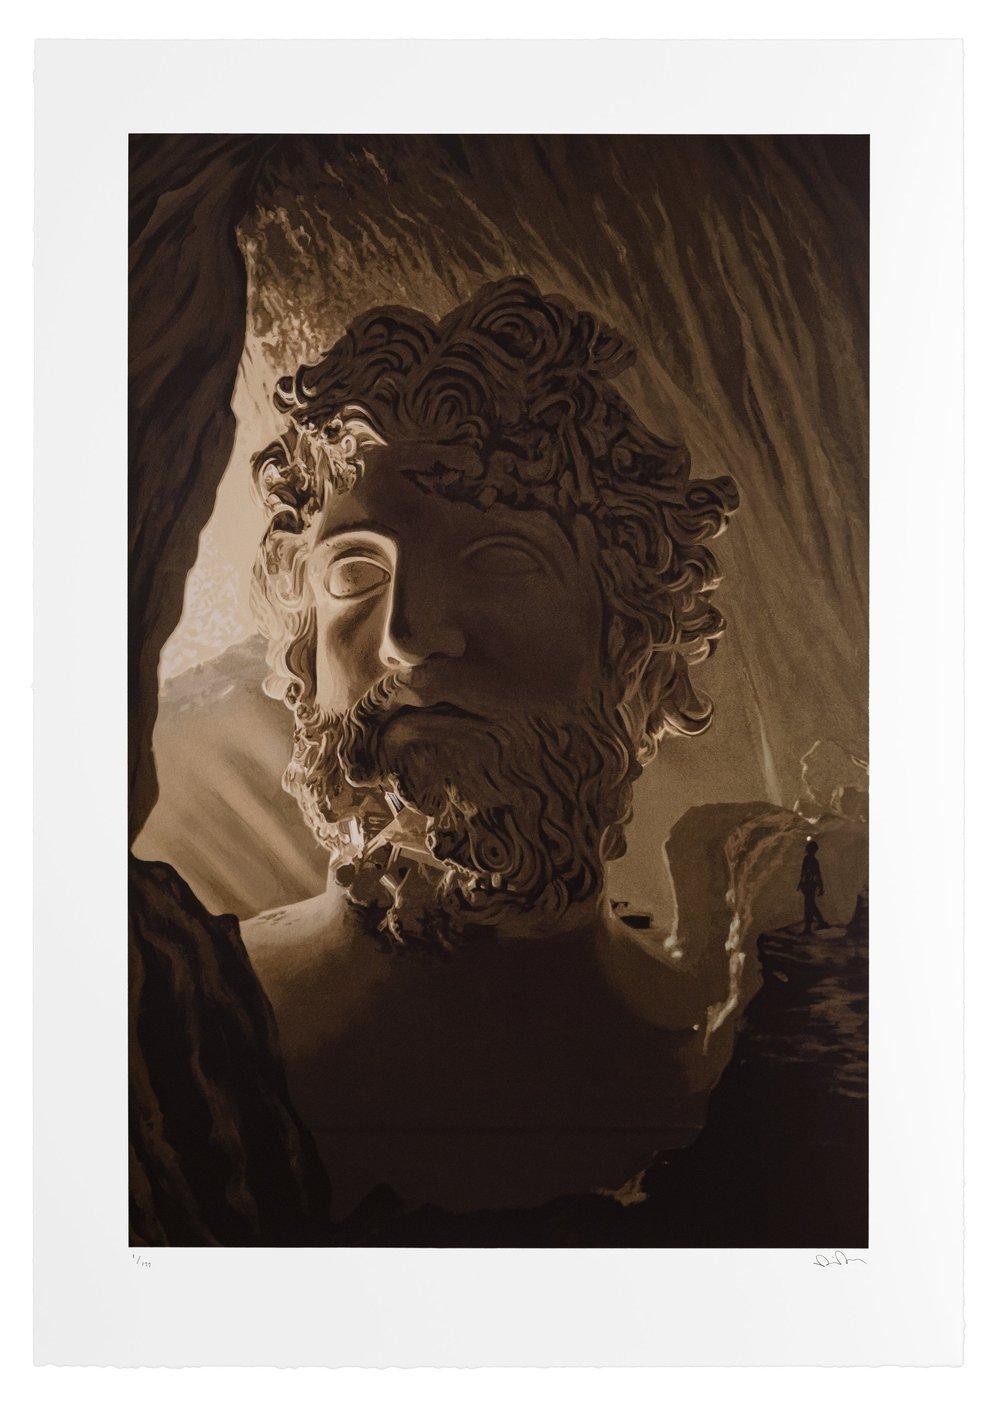 Grotte tropicale de Zeus, sérigraphie sur papier de Daniel Arsham, 2021

L'esthétique uchronique de Daniel Arsham s'articule autour de son concept d'archéologie fictive. Travaillant la sculpture, l'architecture, le dessin et le cinéma, il crée et